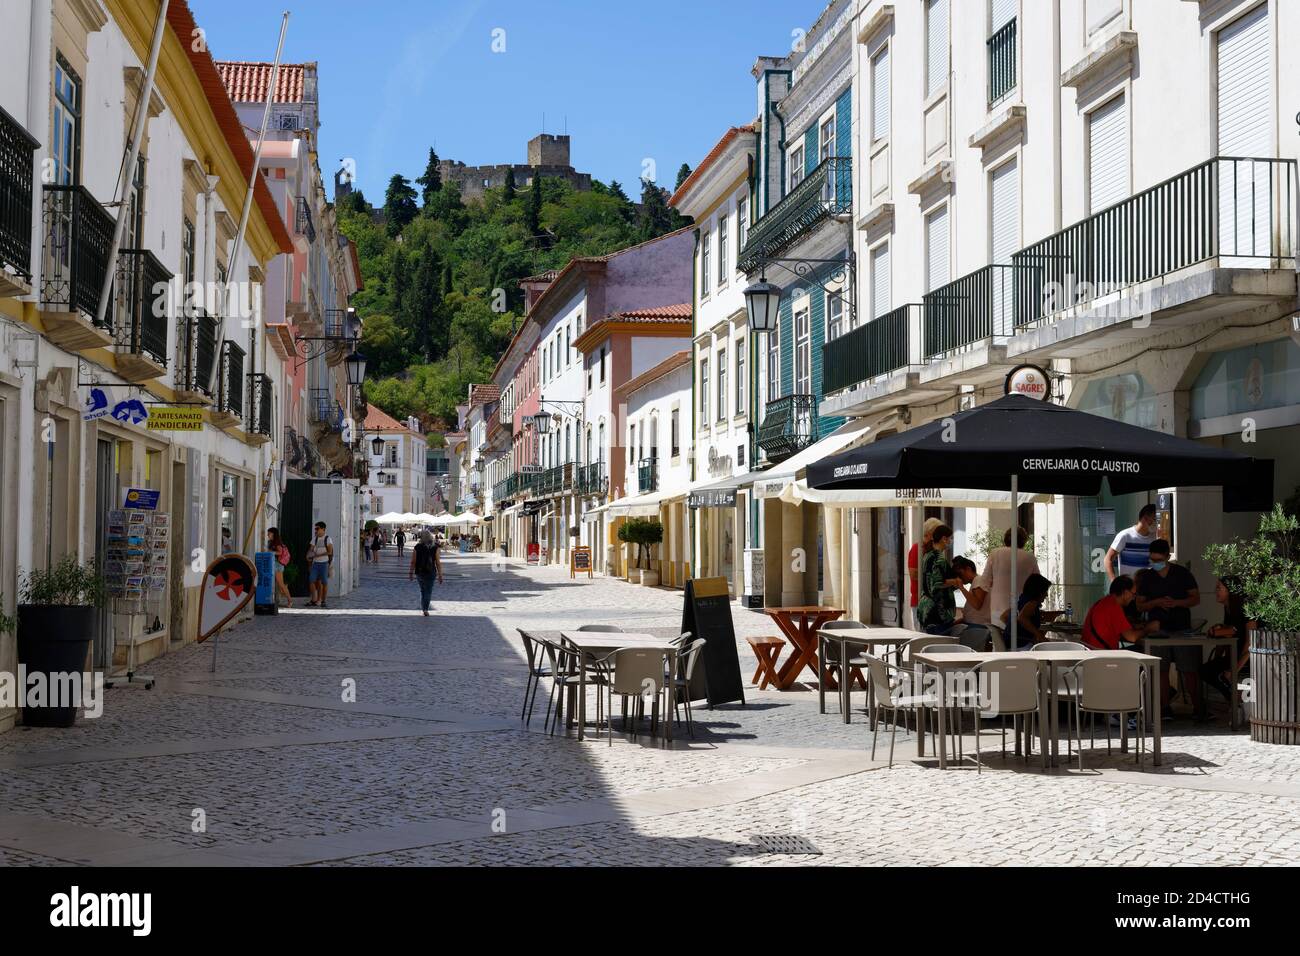 Calle en el centro de la ciudad, Tomar, distrito de Santarem, Portugal Foto de stock